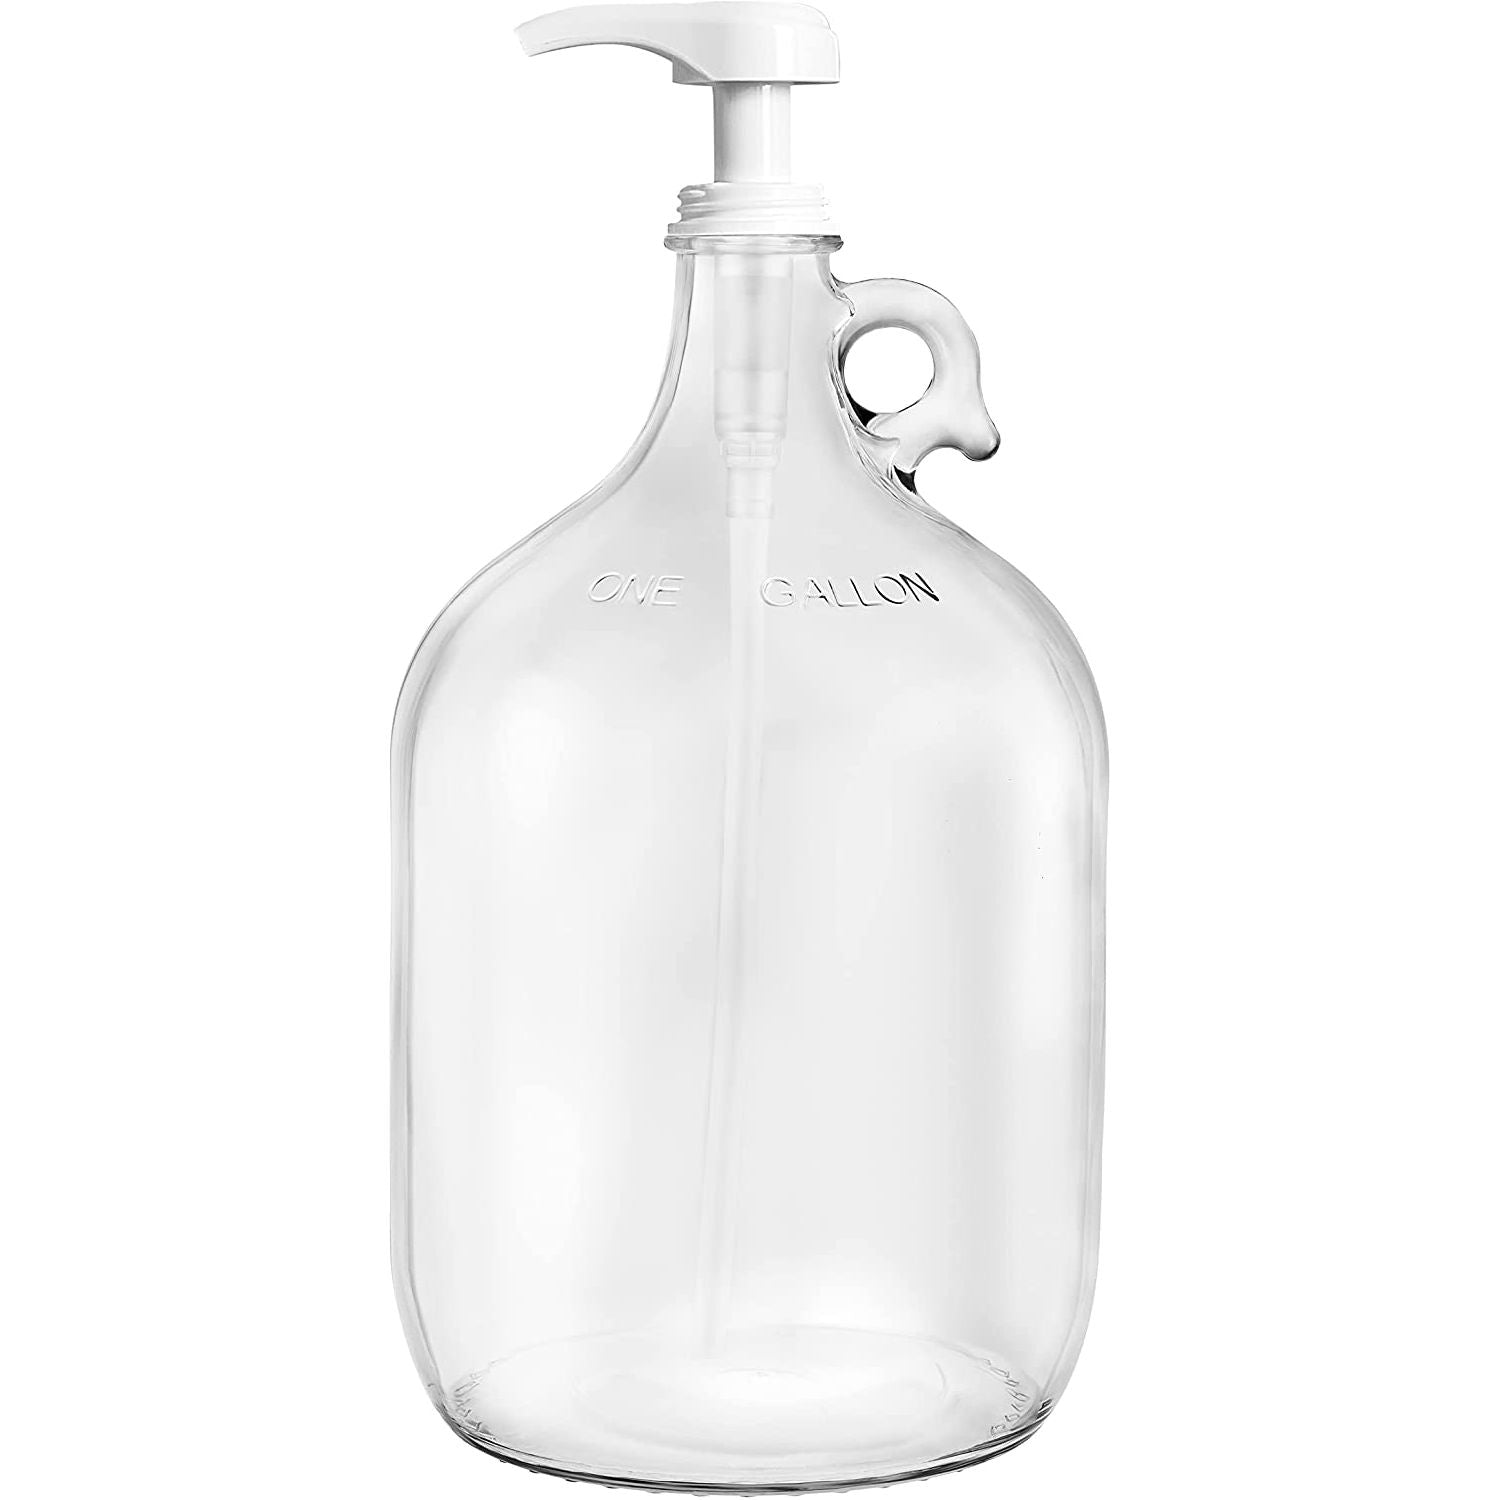 Otagiri White Milk Glass Hand Dispenser “Kitty” Liquid Soap Pump